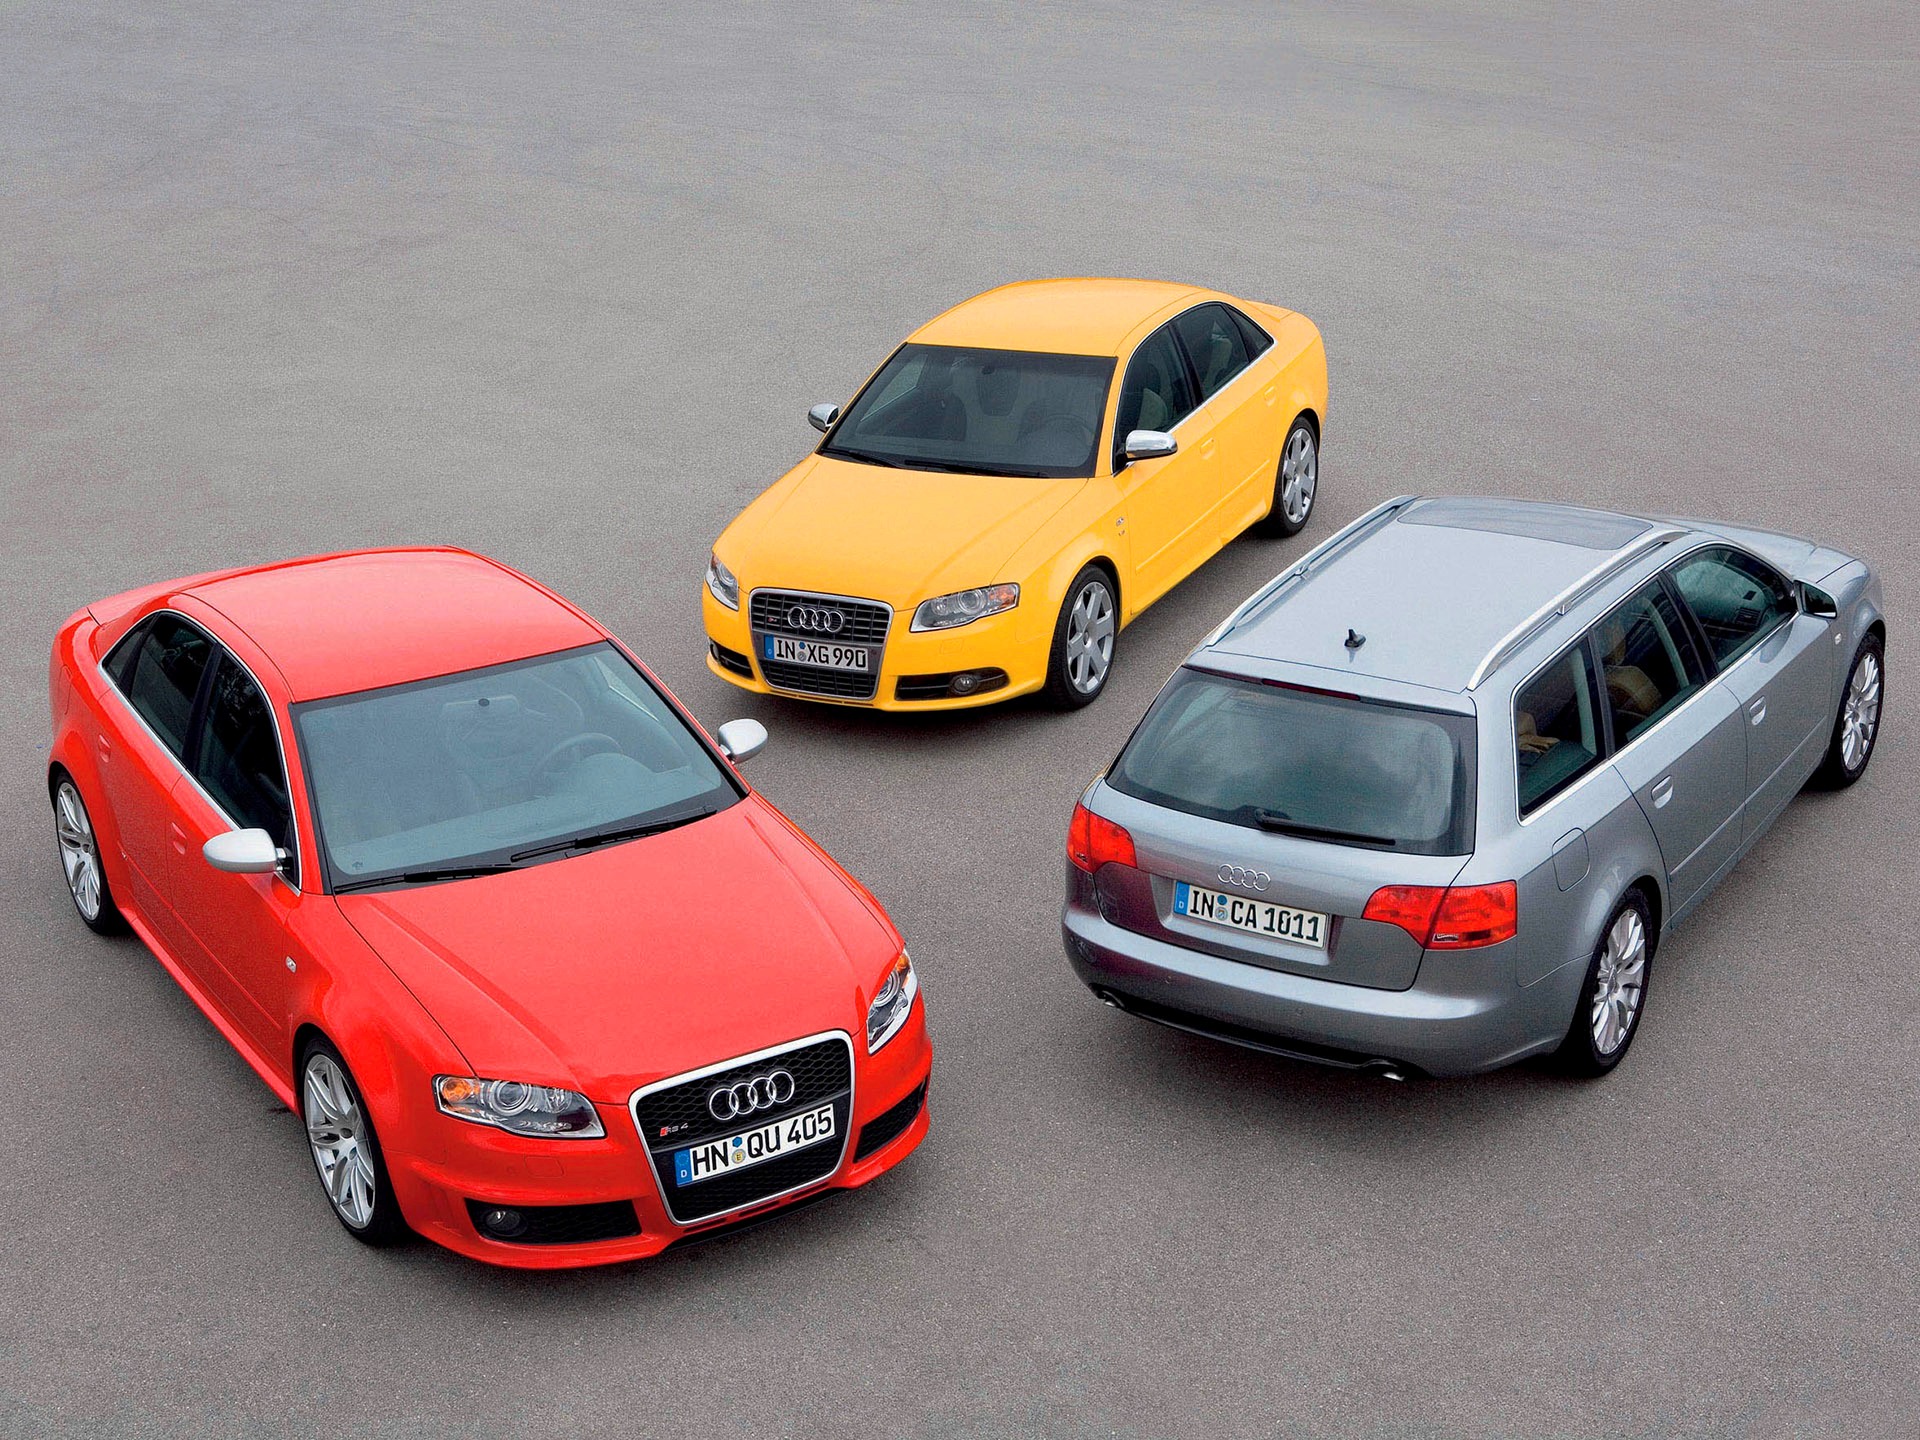 2008 год выпуска автомобиля Audi